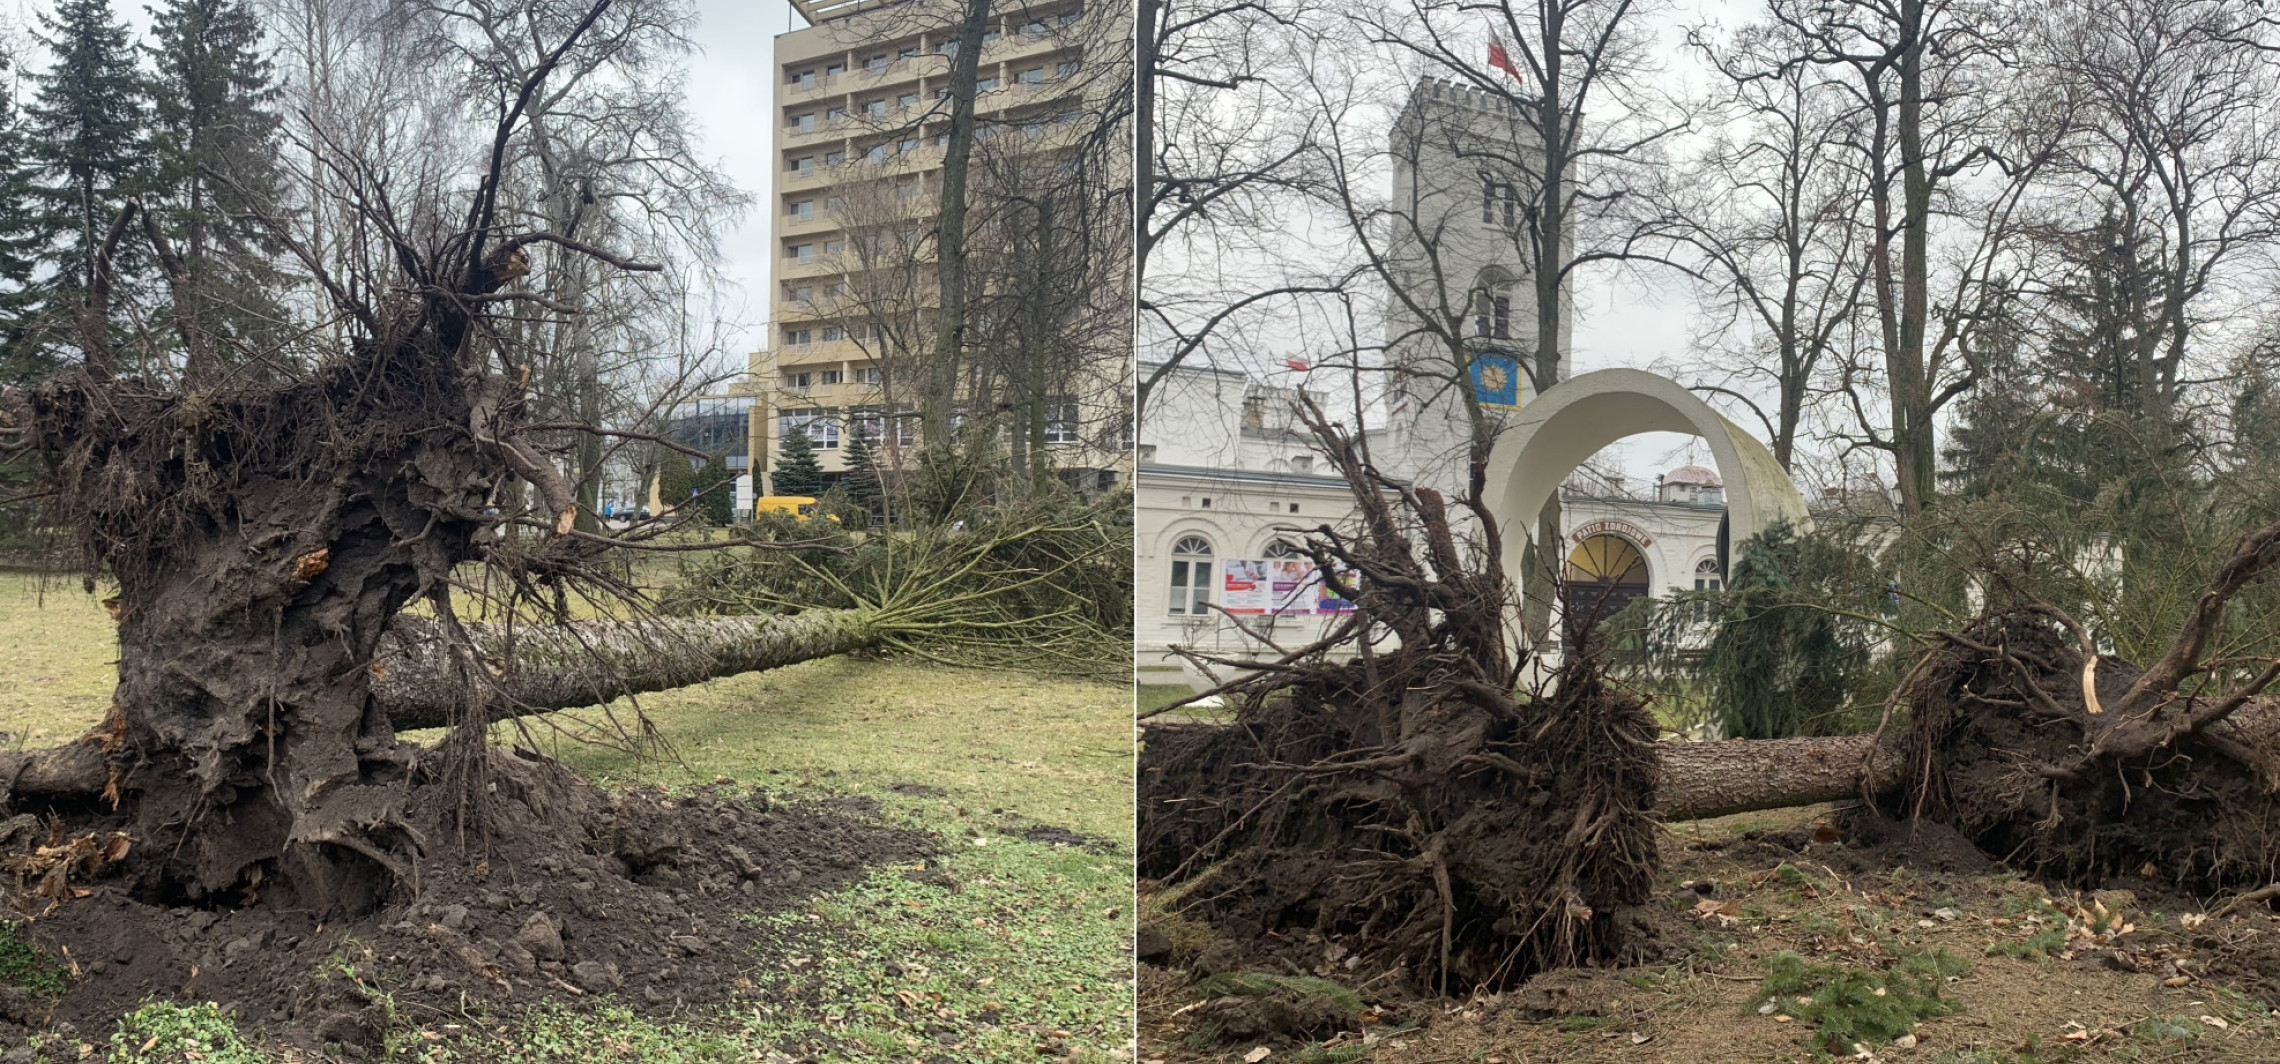 Inowrocław - Wichura powaliła drzewa w Parku Solankowym